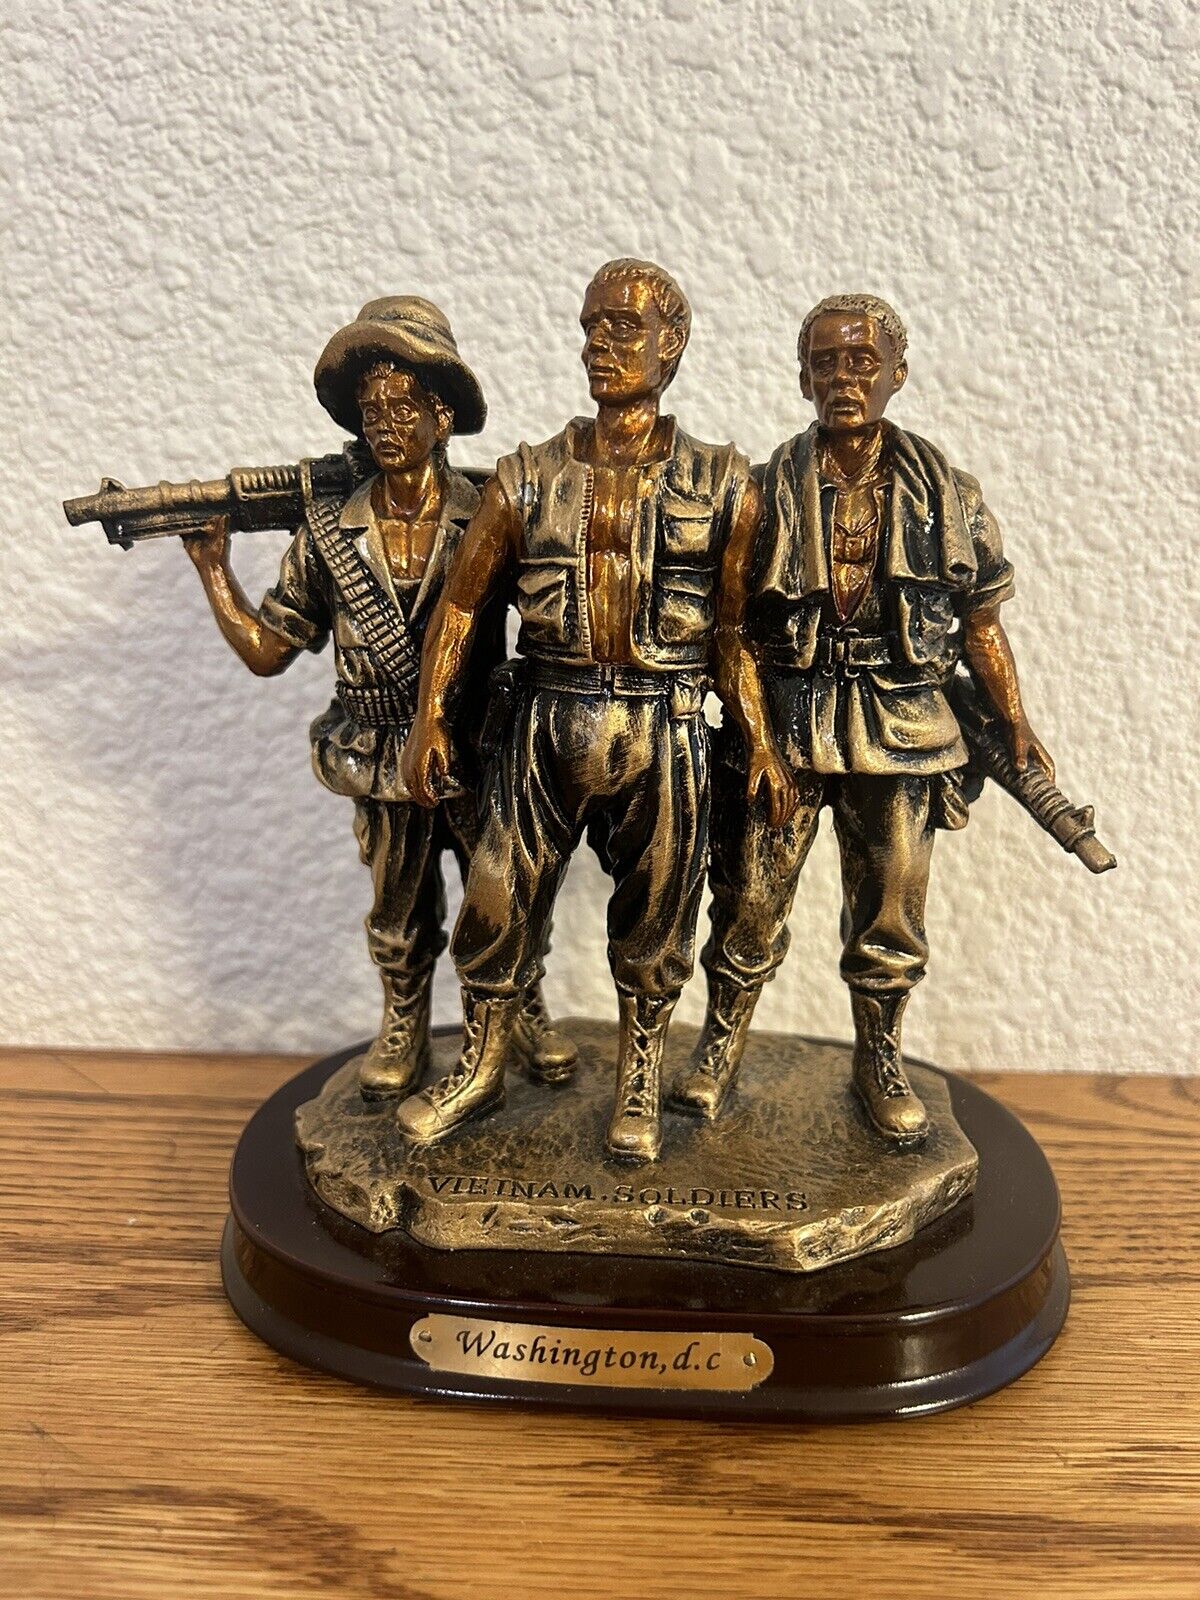 Vietnam Veterans War Memorial Replica Statue 6” The 3 Soldiers